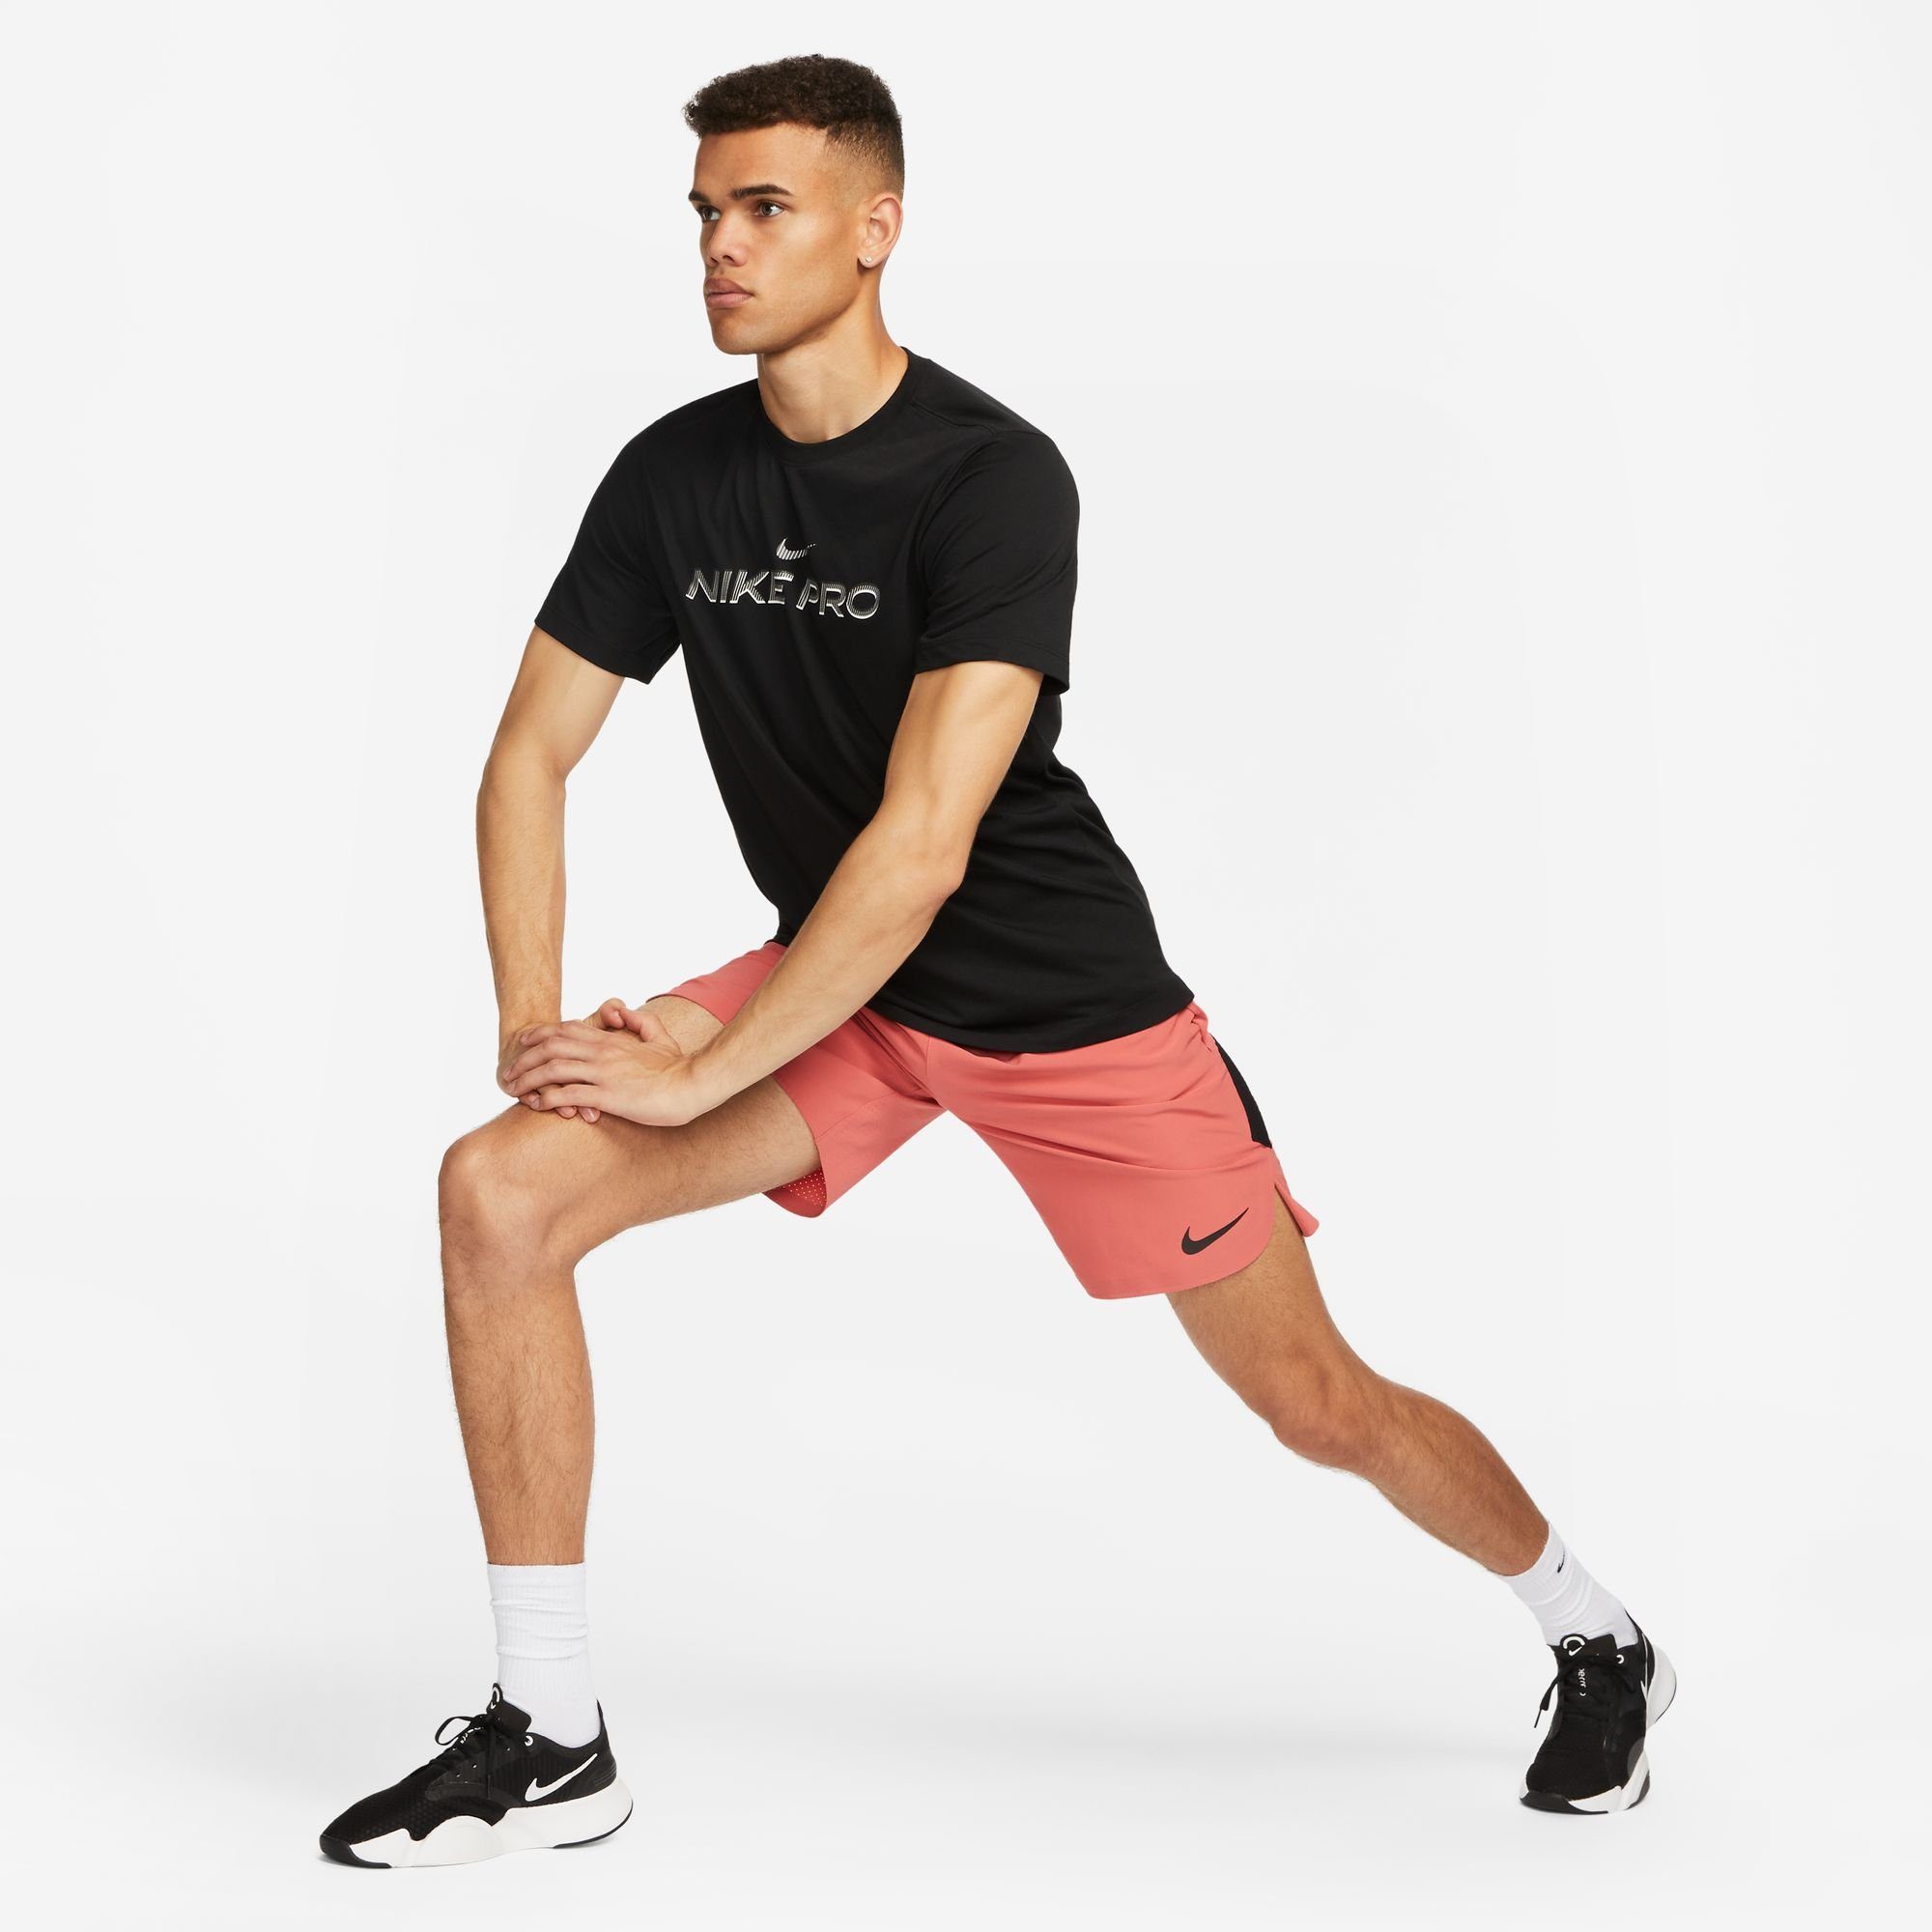 MEN'S Nike T-SHIRT BLACK DRI-FIT Trainingsshirt FITNESS